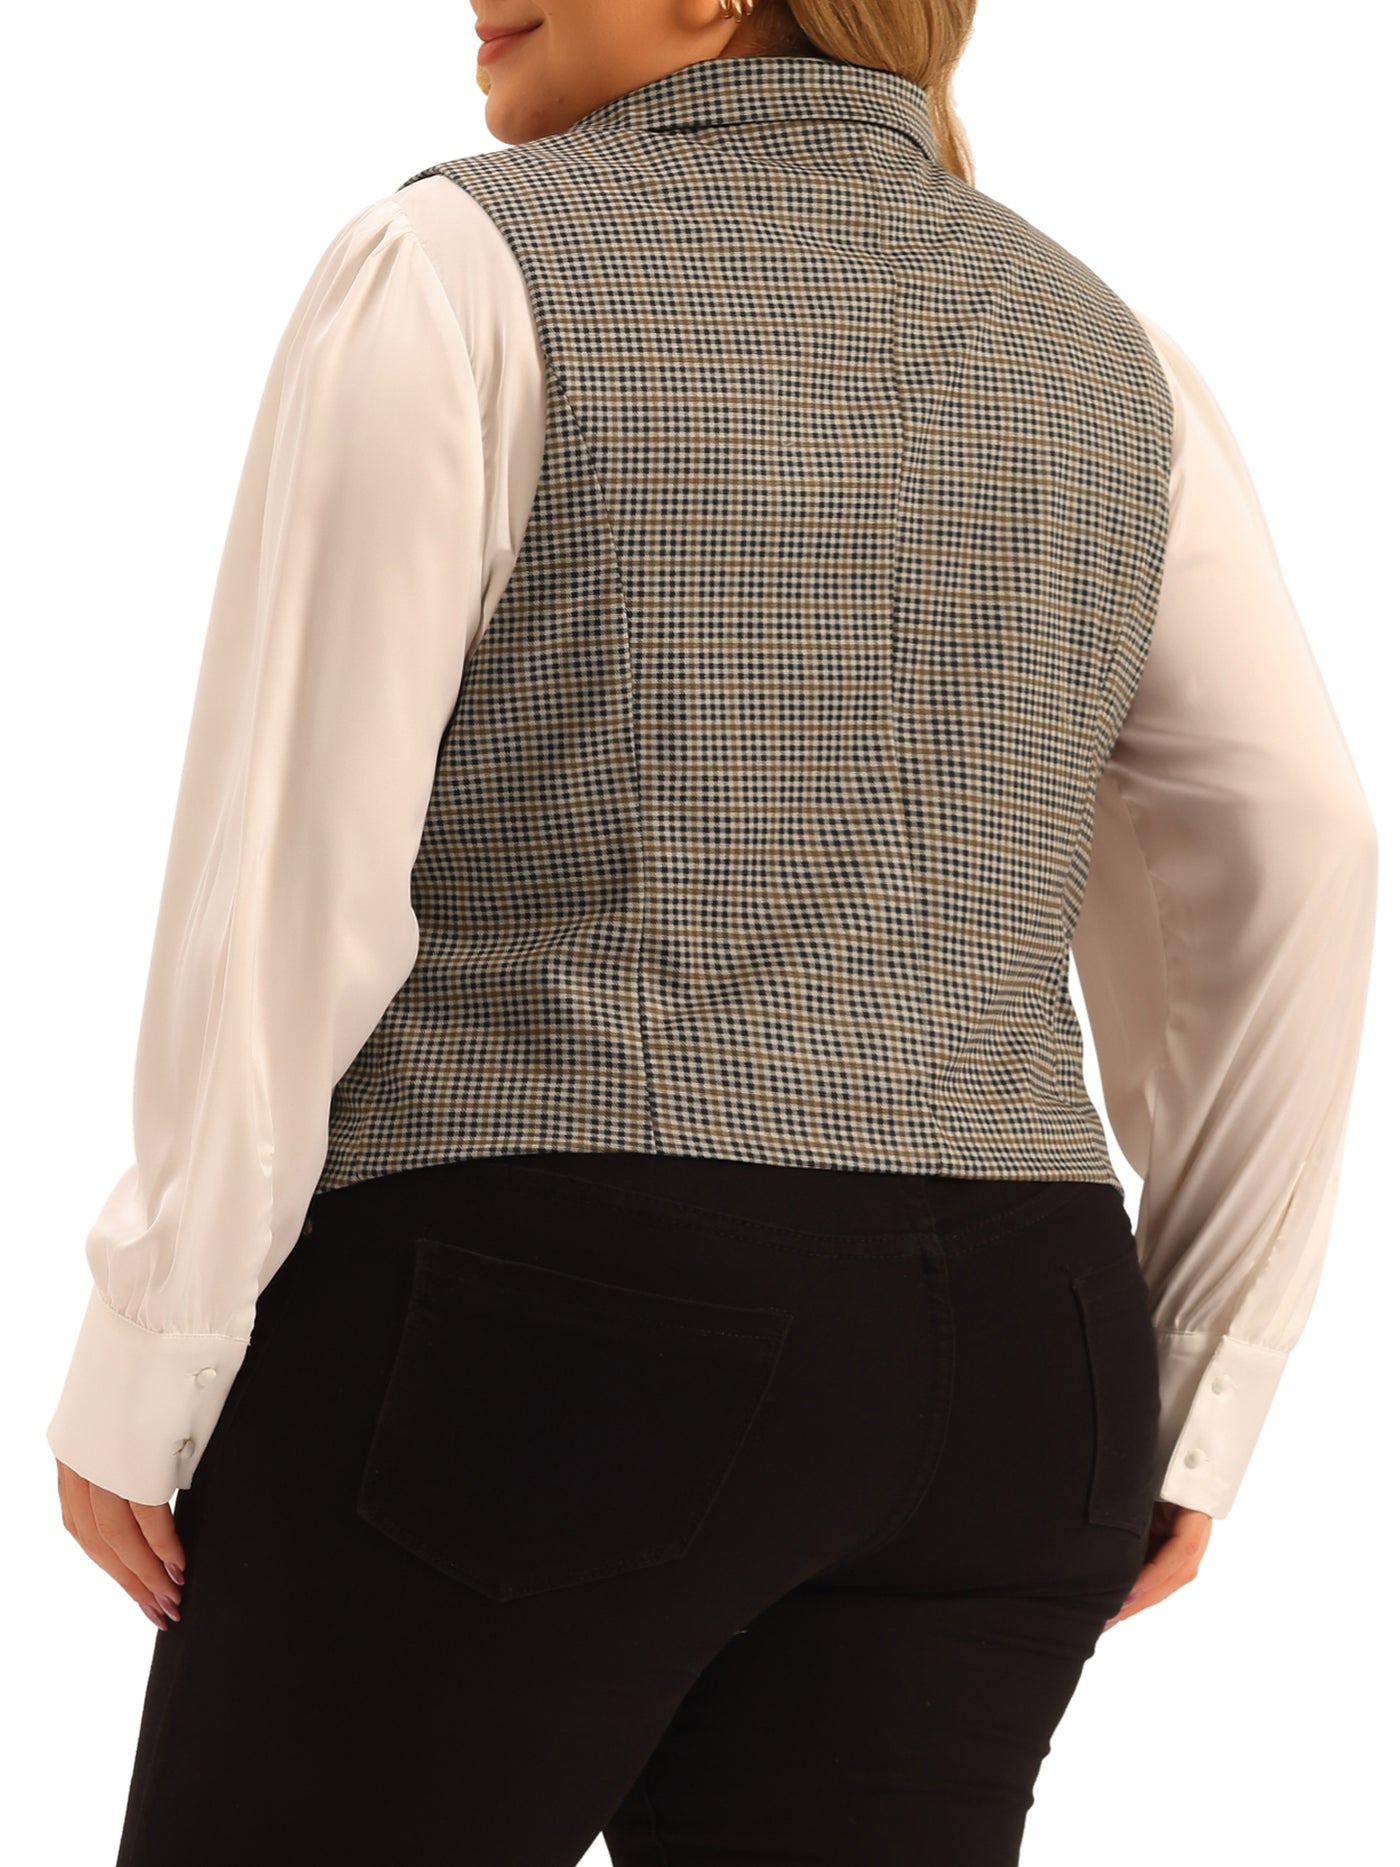 Bublédon Plus Size Waistcoat Vintage Button Steampunk Dress Jacquard Jacket Vest